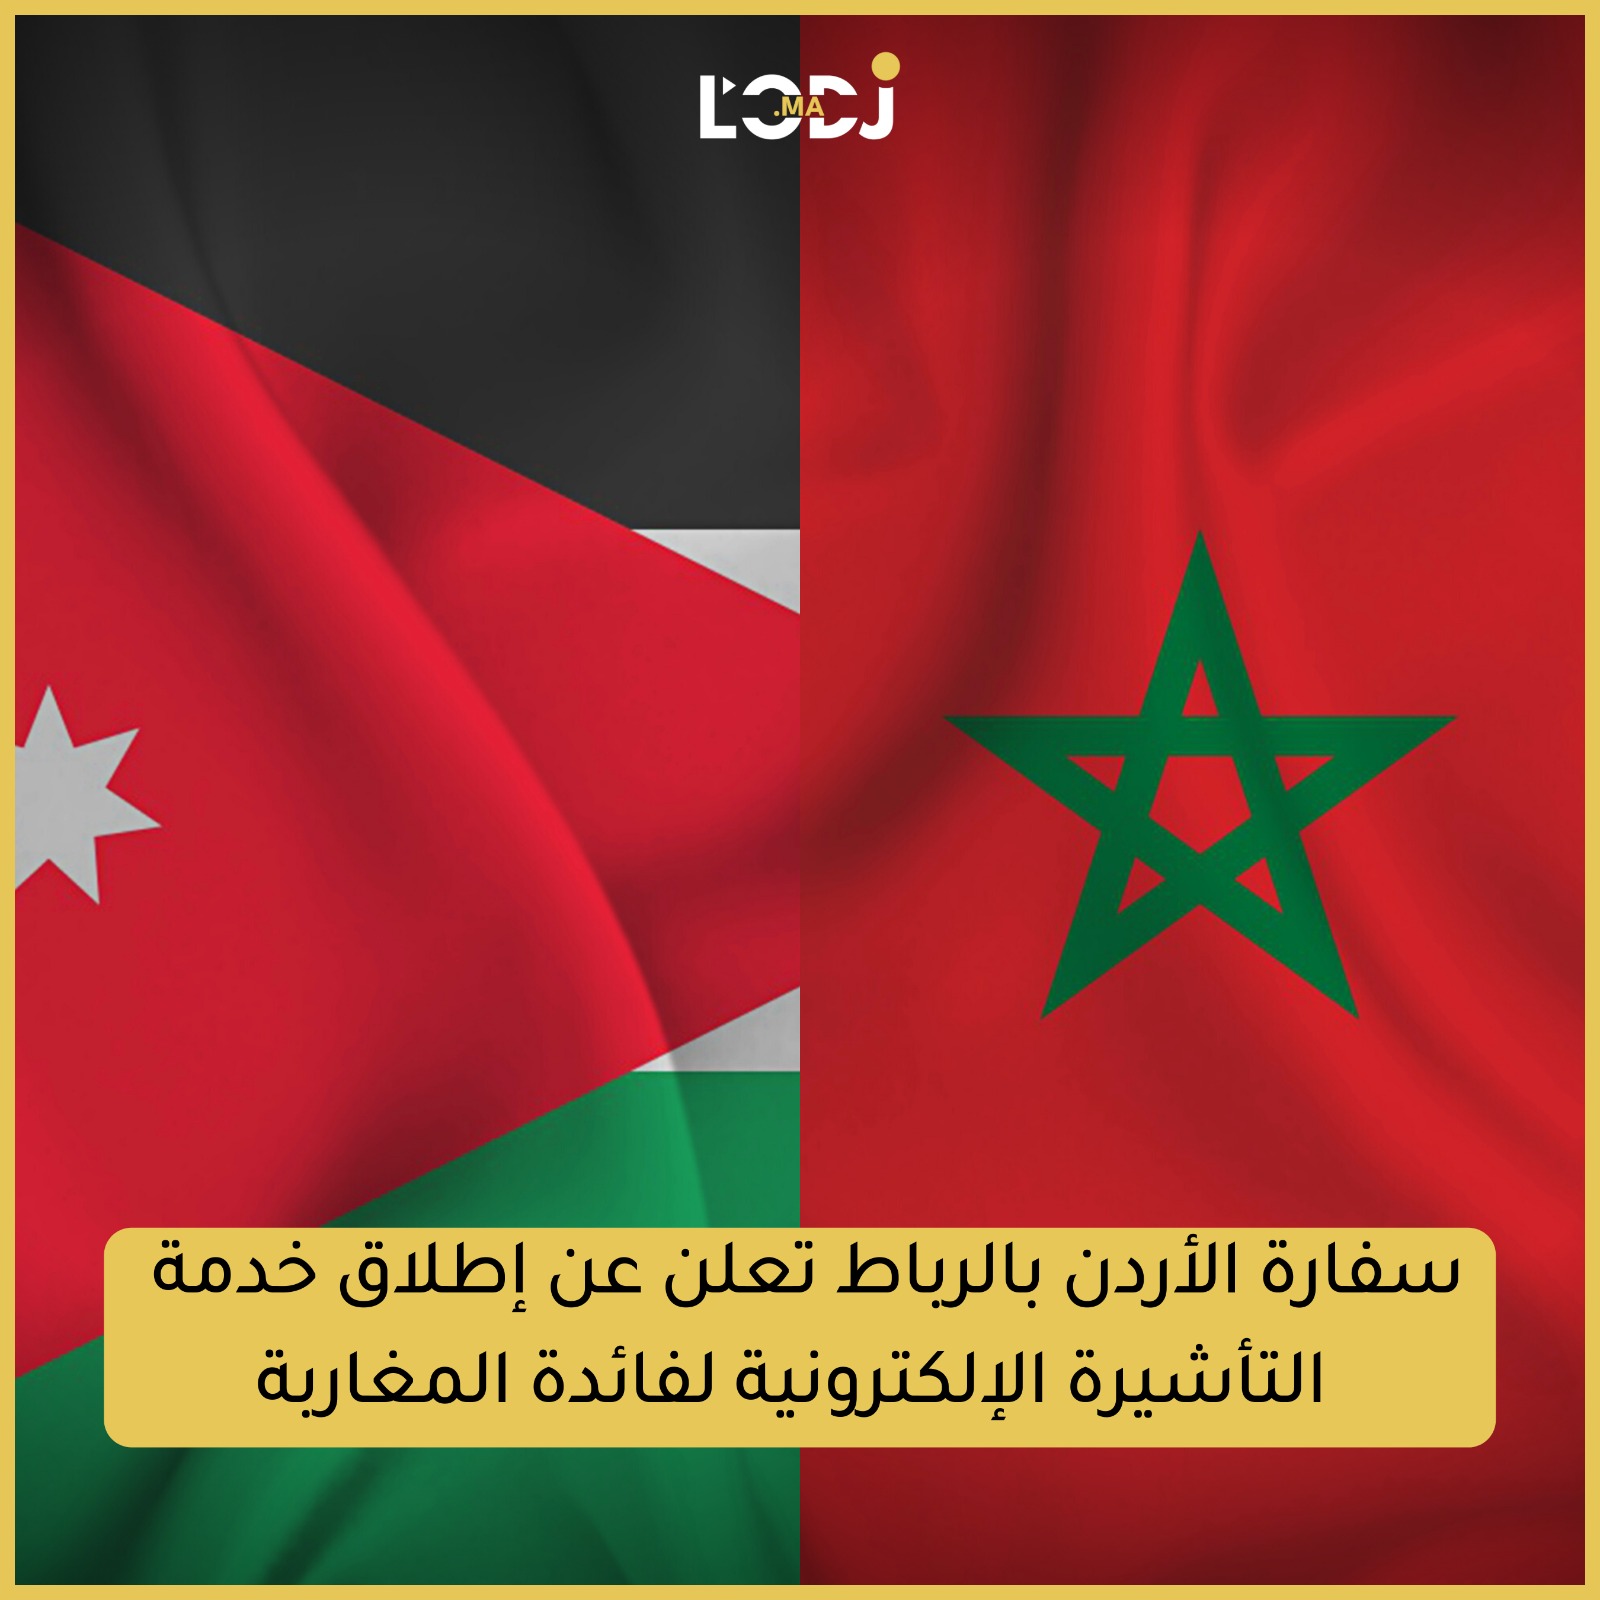 سفارة الأردن بالرباط تعلن عن إطلاق خدمة التأشيرة الإلكترونية لفائدة المغاربة